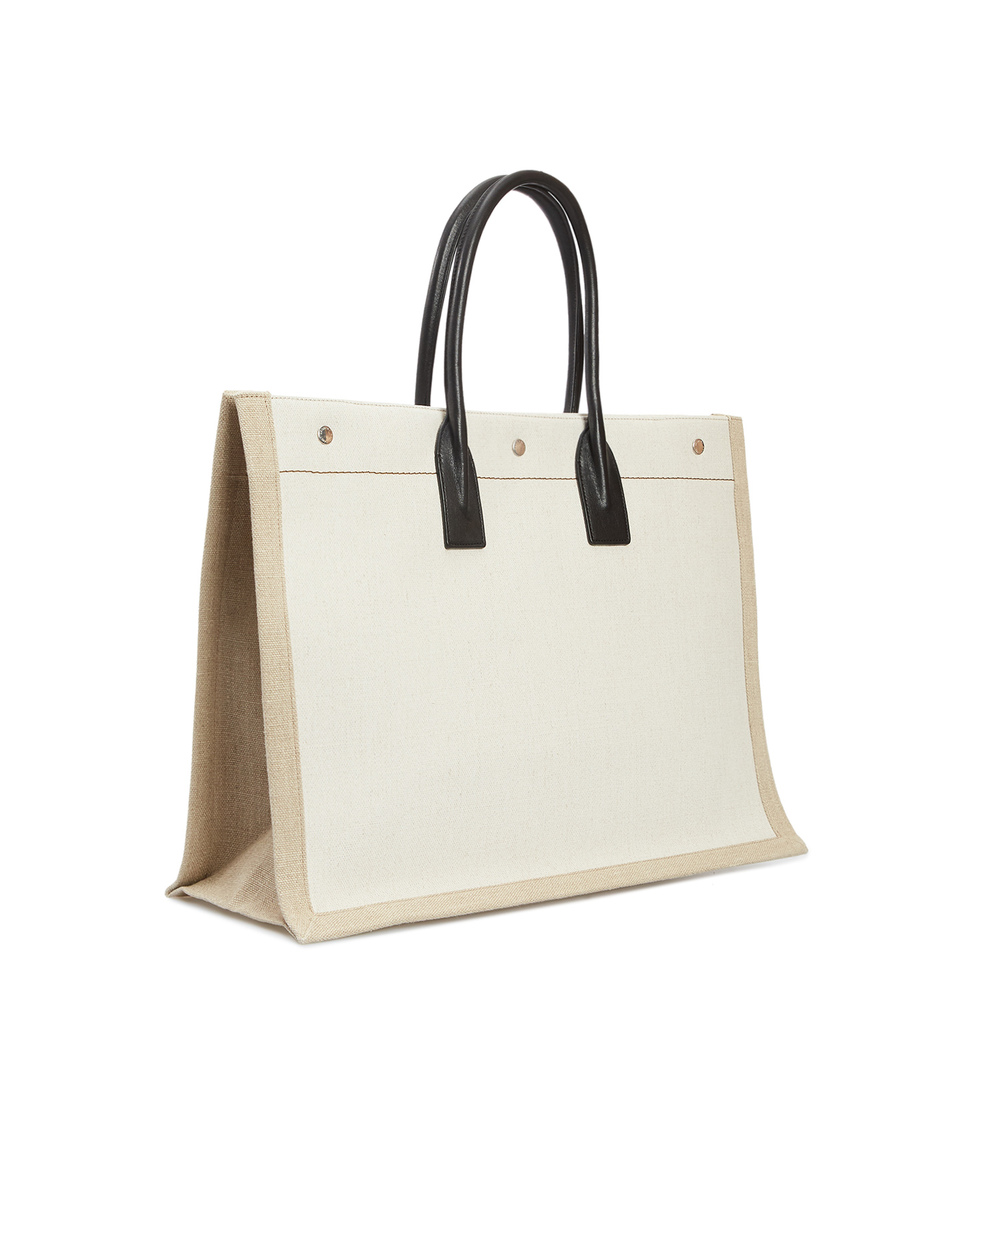 Льняная сумка Noe large Saint Laurent 509415-9J52E, белый цвет • Купить в интернет-магазине Kameron